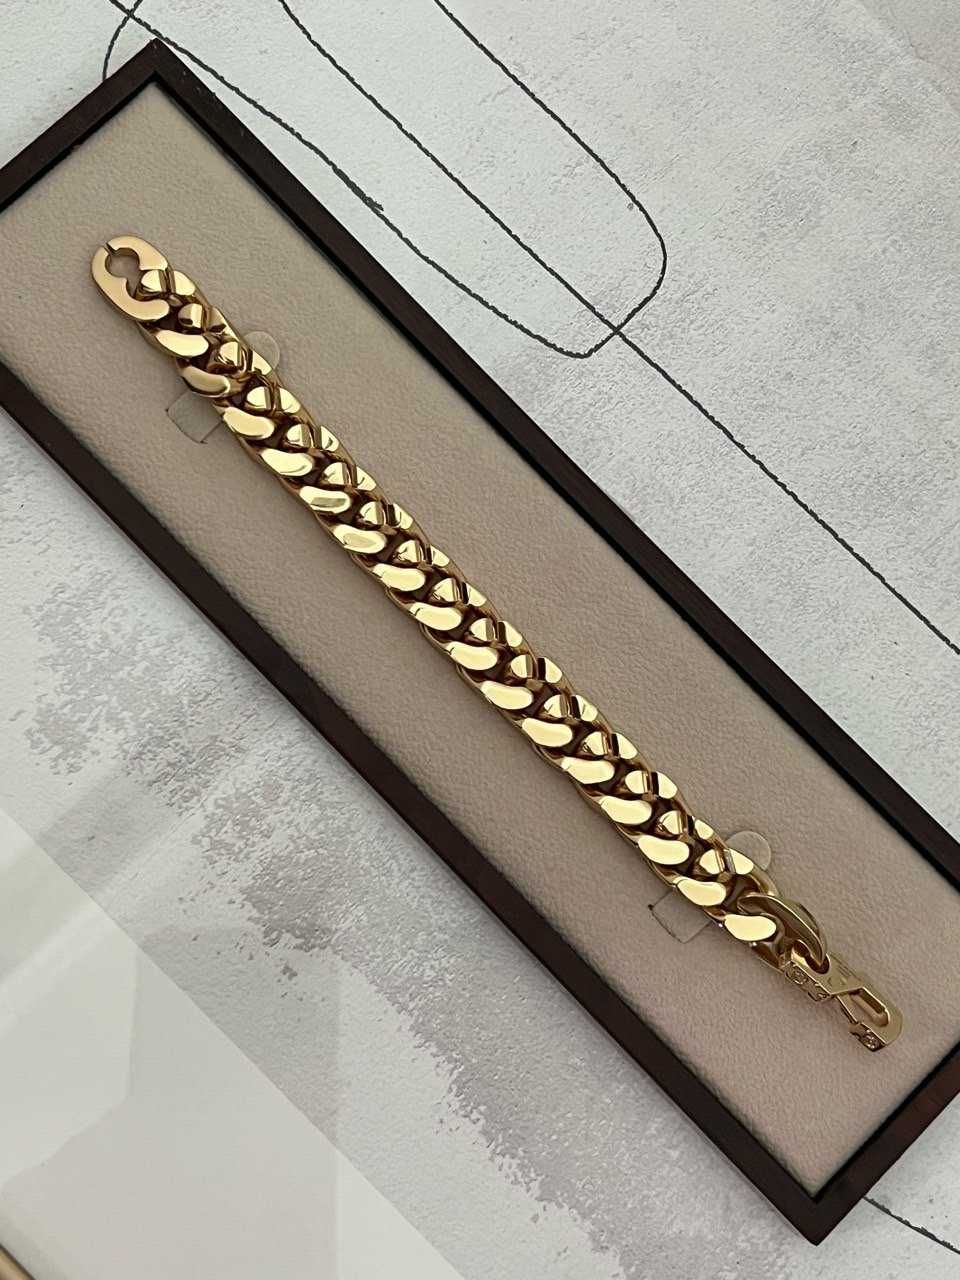 Bratara Louis Vuitton Chain Link Gold | Toate accesoriile incluse